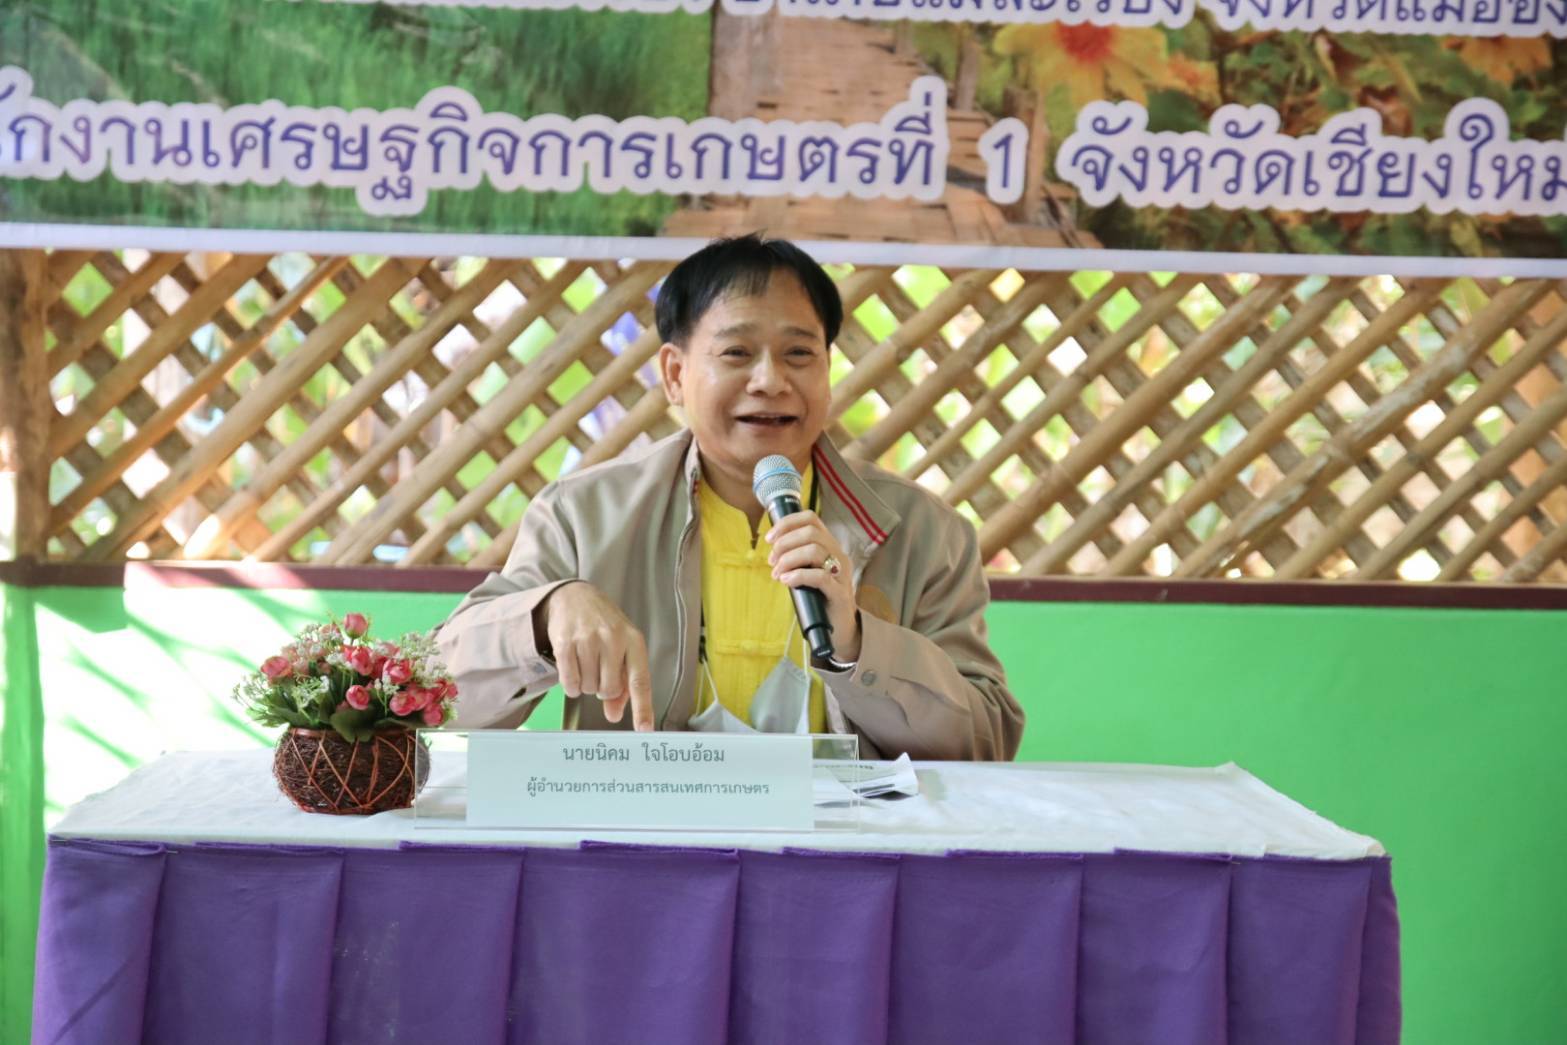 สำนักงานเศรษฐกิจการเกษตรที่ 1 จัดกิจกรรมอบรมและสาธิตการเกษตรไทยด้วยปรัชญาเศรษฐกิจพอเพียง จ.แม่ฮ่องสอน